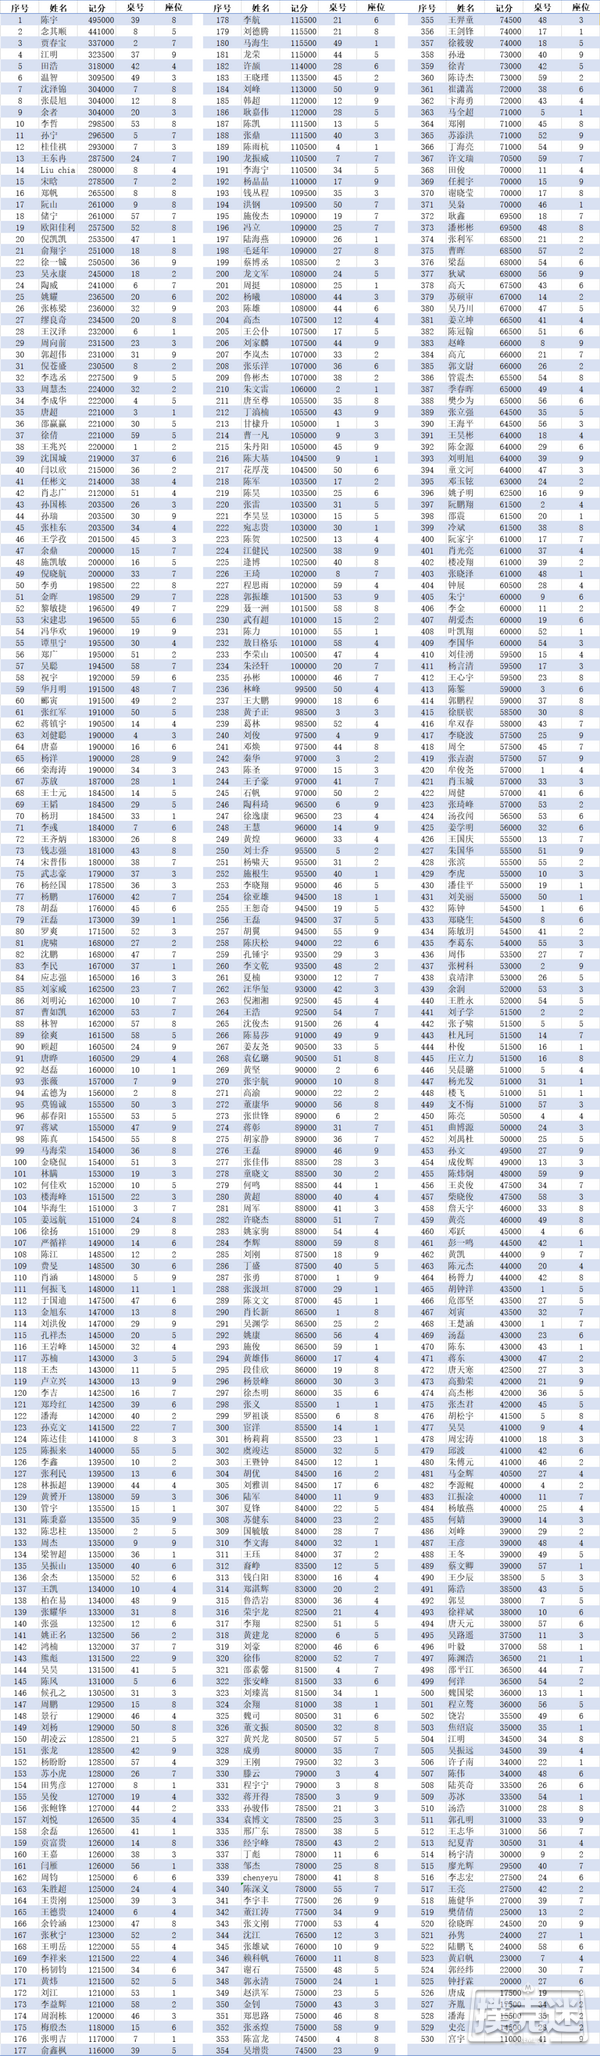 2020CPG上海选拔赛 | 主赛总人数1906人次，C组温智领跑185人晋级！